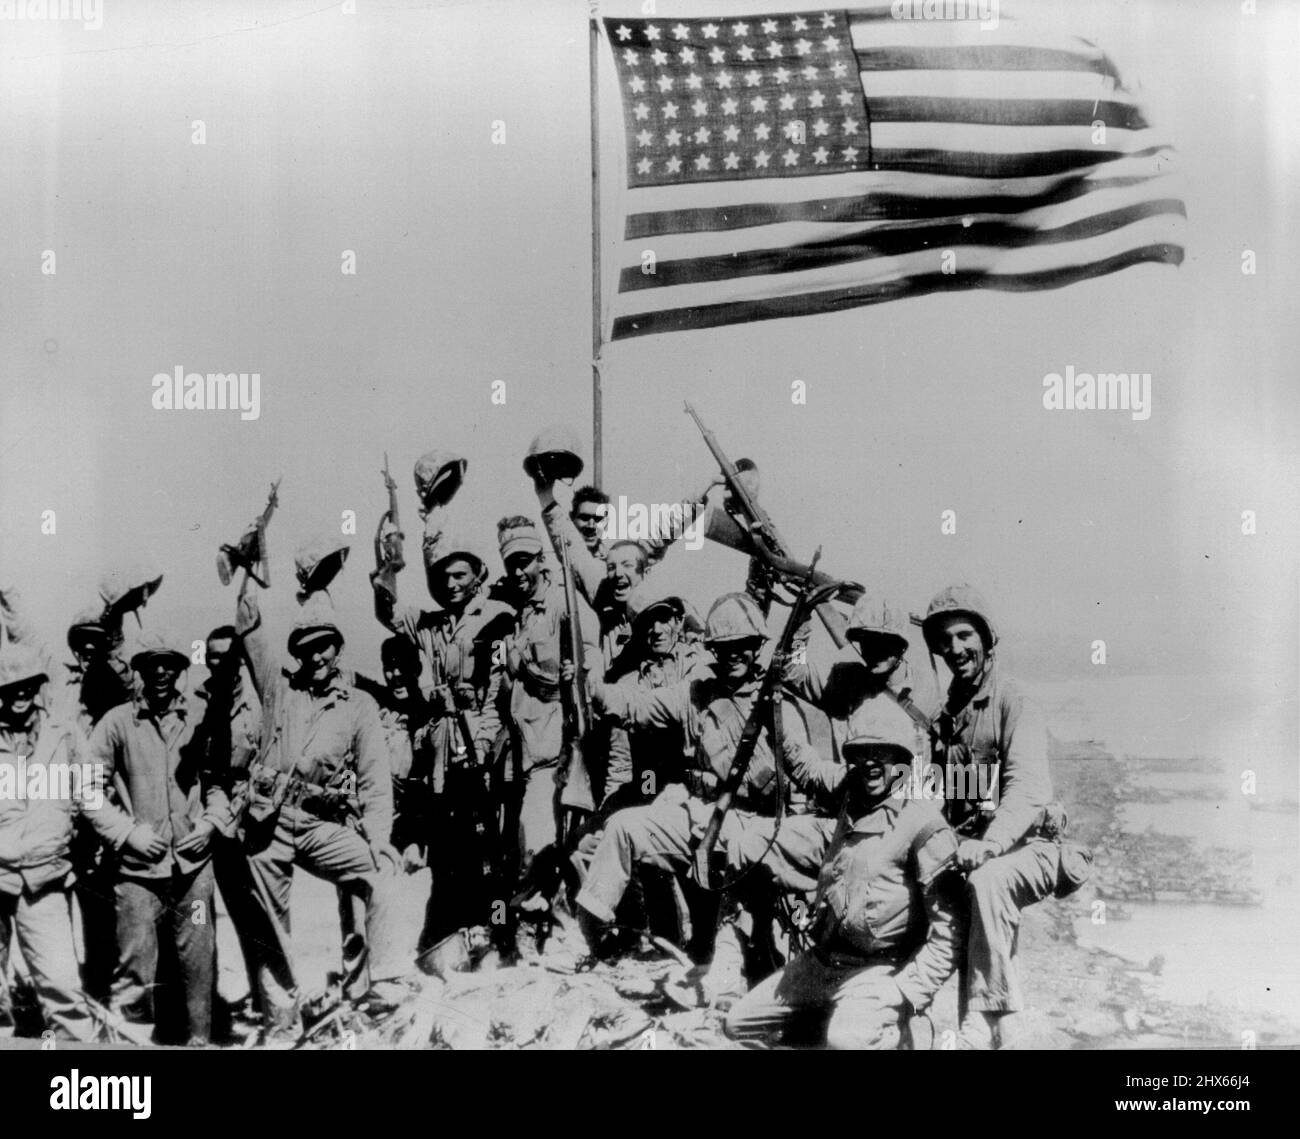 Sie setzten die US-Flagge auf Suribachi - Marines des 28. Regiments, 5. Division, winken von der amerikanischen Flagge, die sie auf Suribachi, dem Vulkan von Iwo Jima, setzten, nach einem erbitterten, bergauf ansteigenden Kampf mit den Japanern in Höhlen und Pillboxen auf Iwo Jima's Naturfestung. 27. Februar 1945. (Foto von Joe Rosenthal, AP). Stockfoto